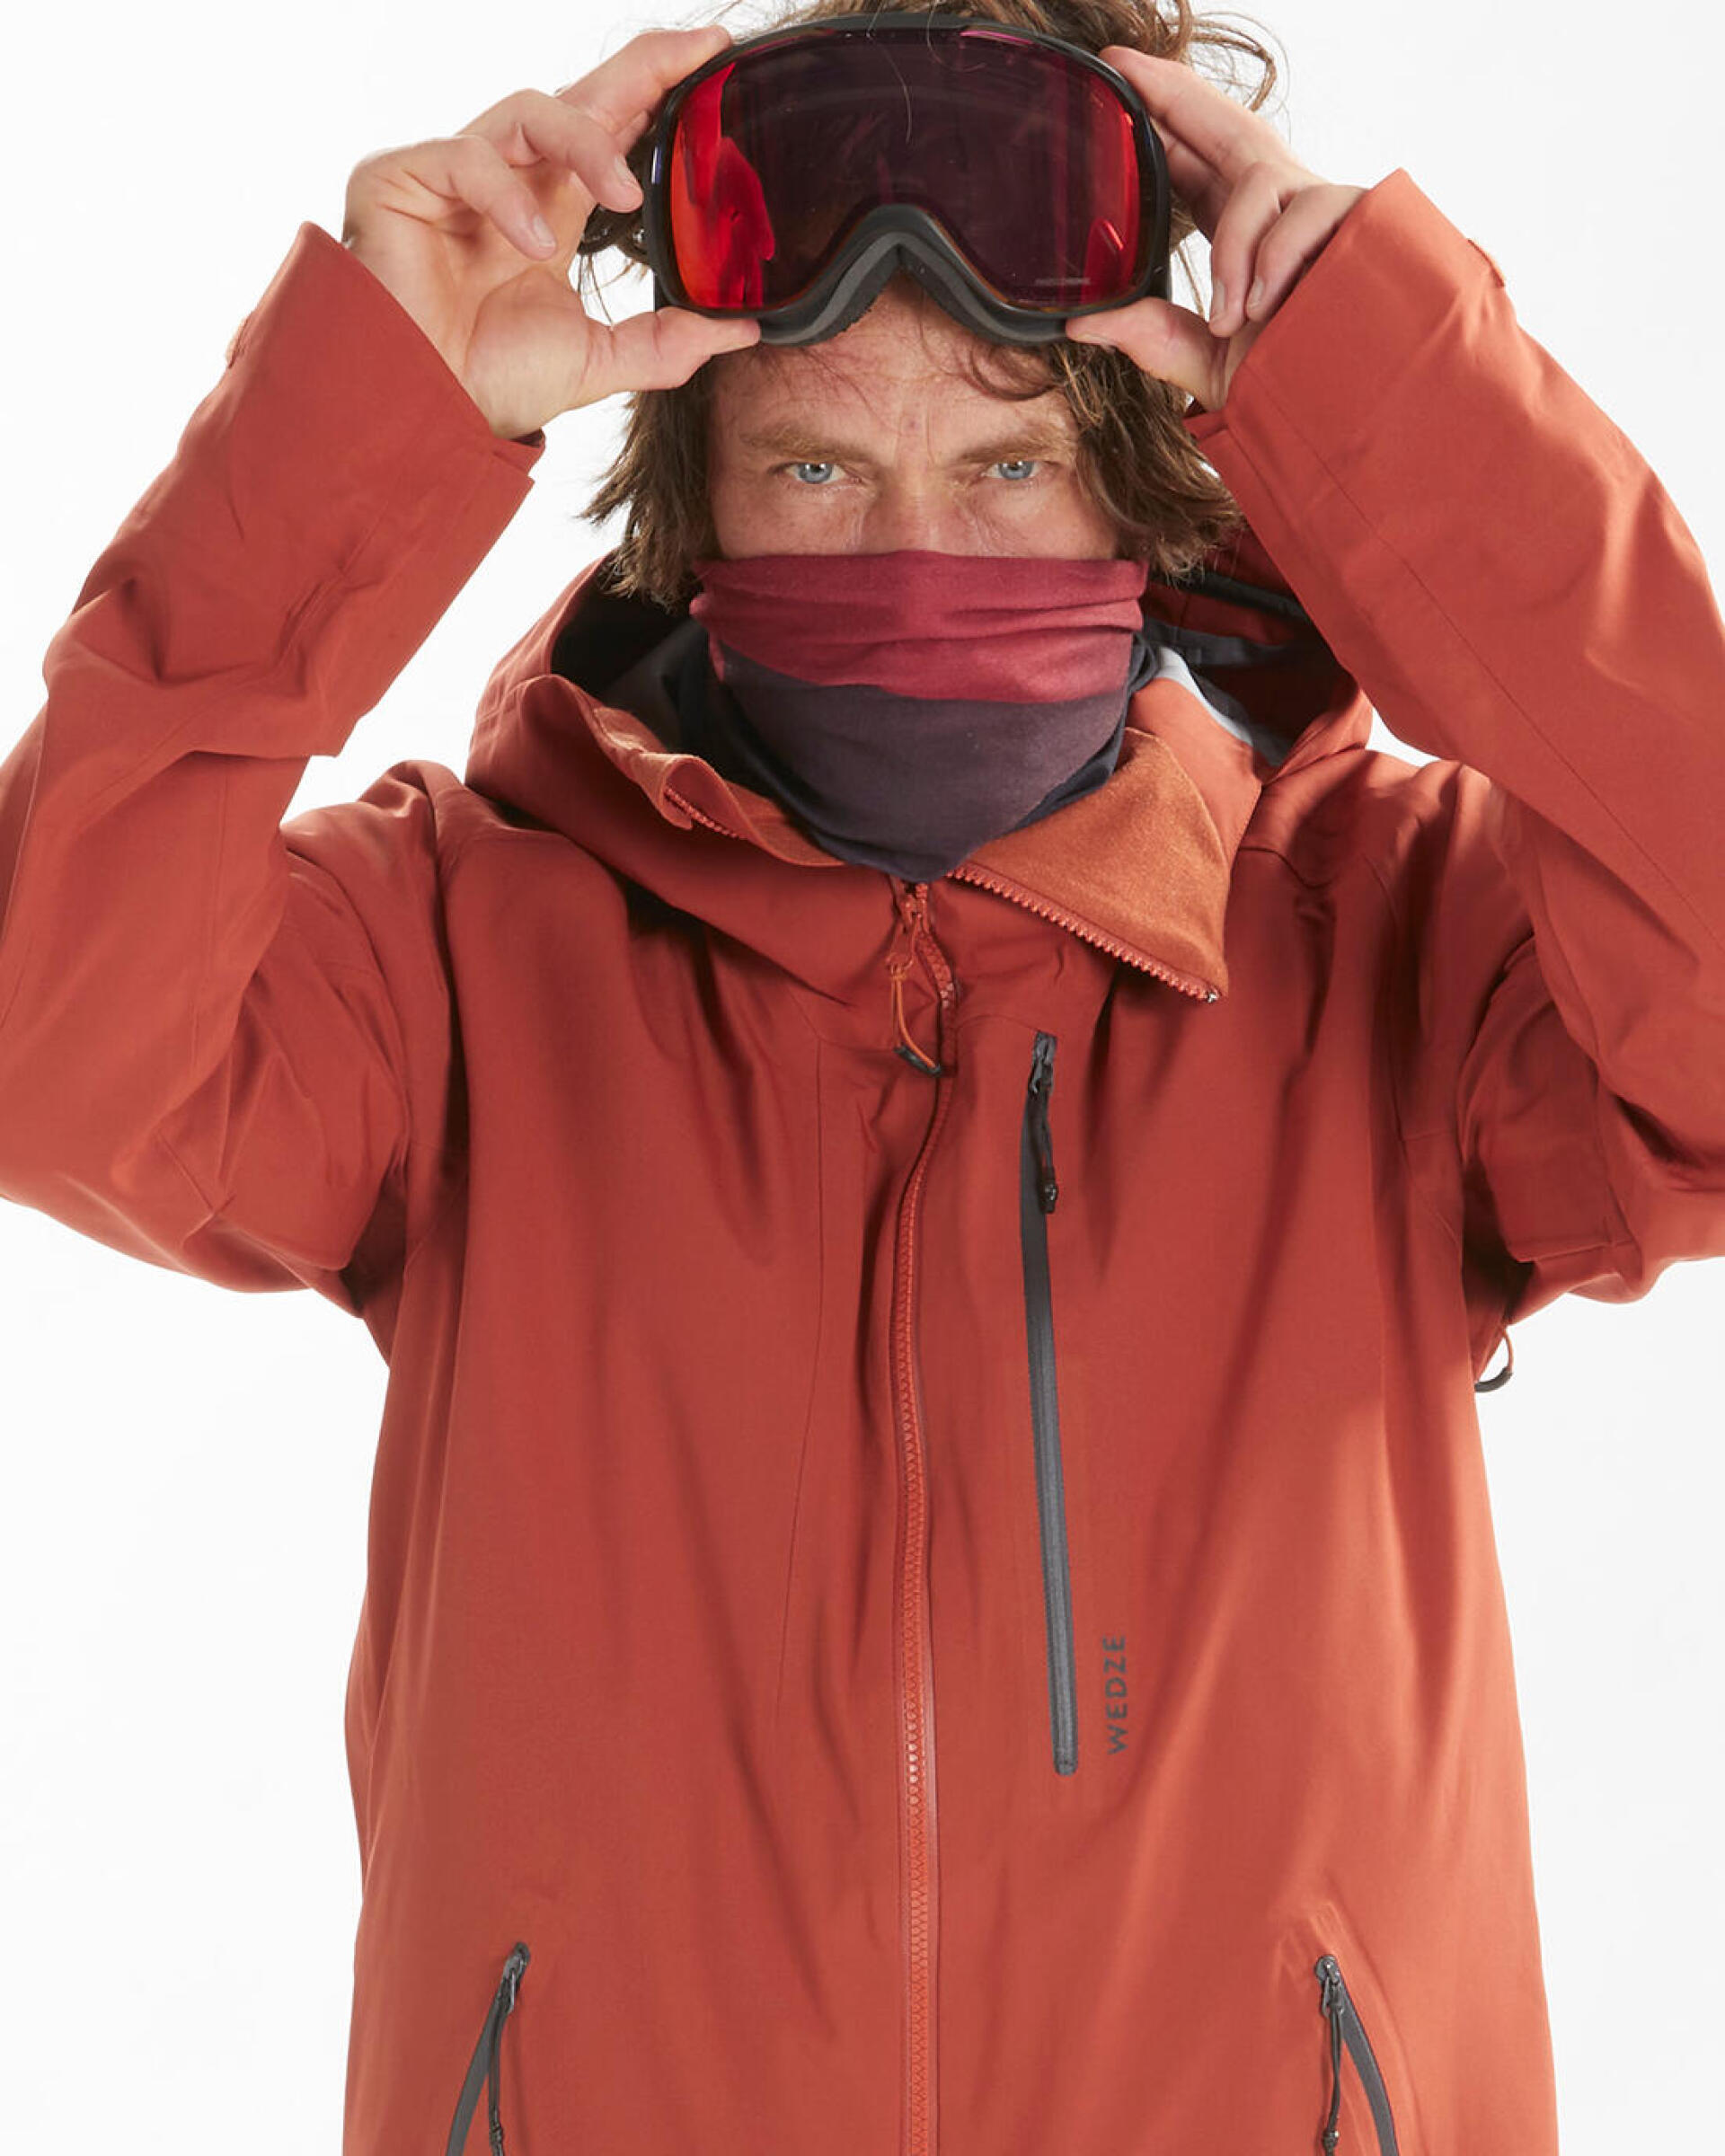 Como escolher o casaco de ski freeride?